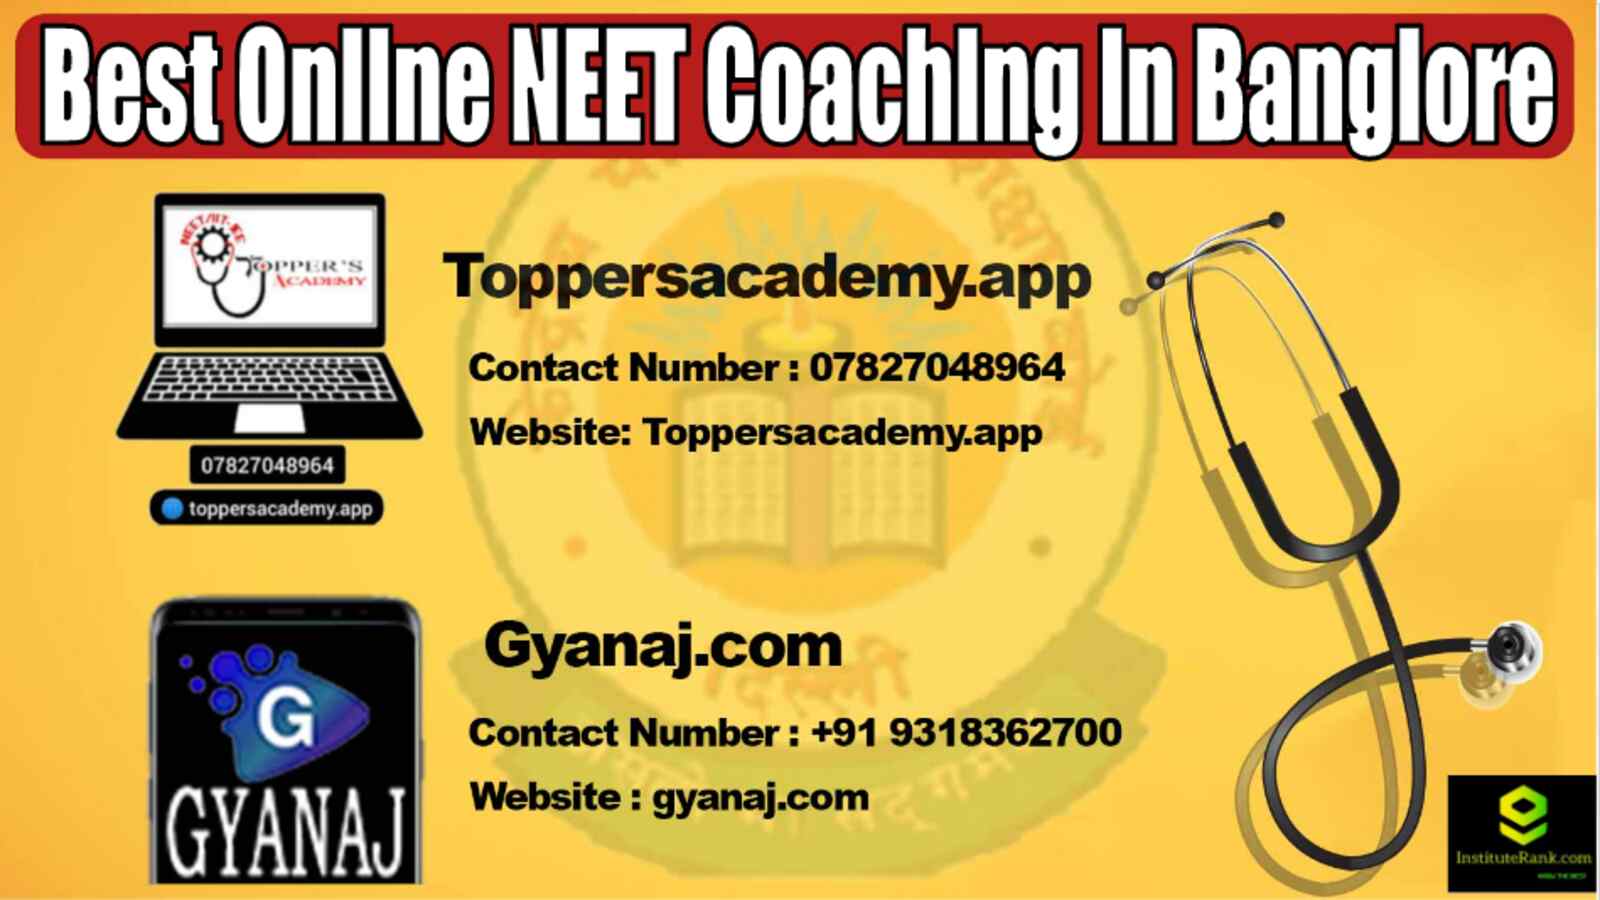 Best Online NEET Coaching in Banglore 2022